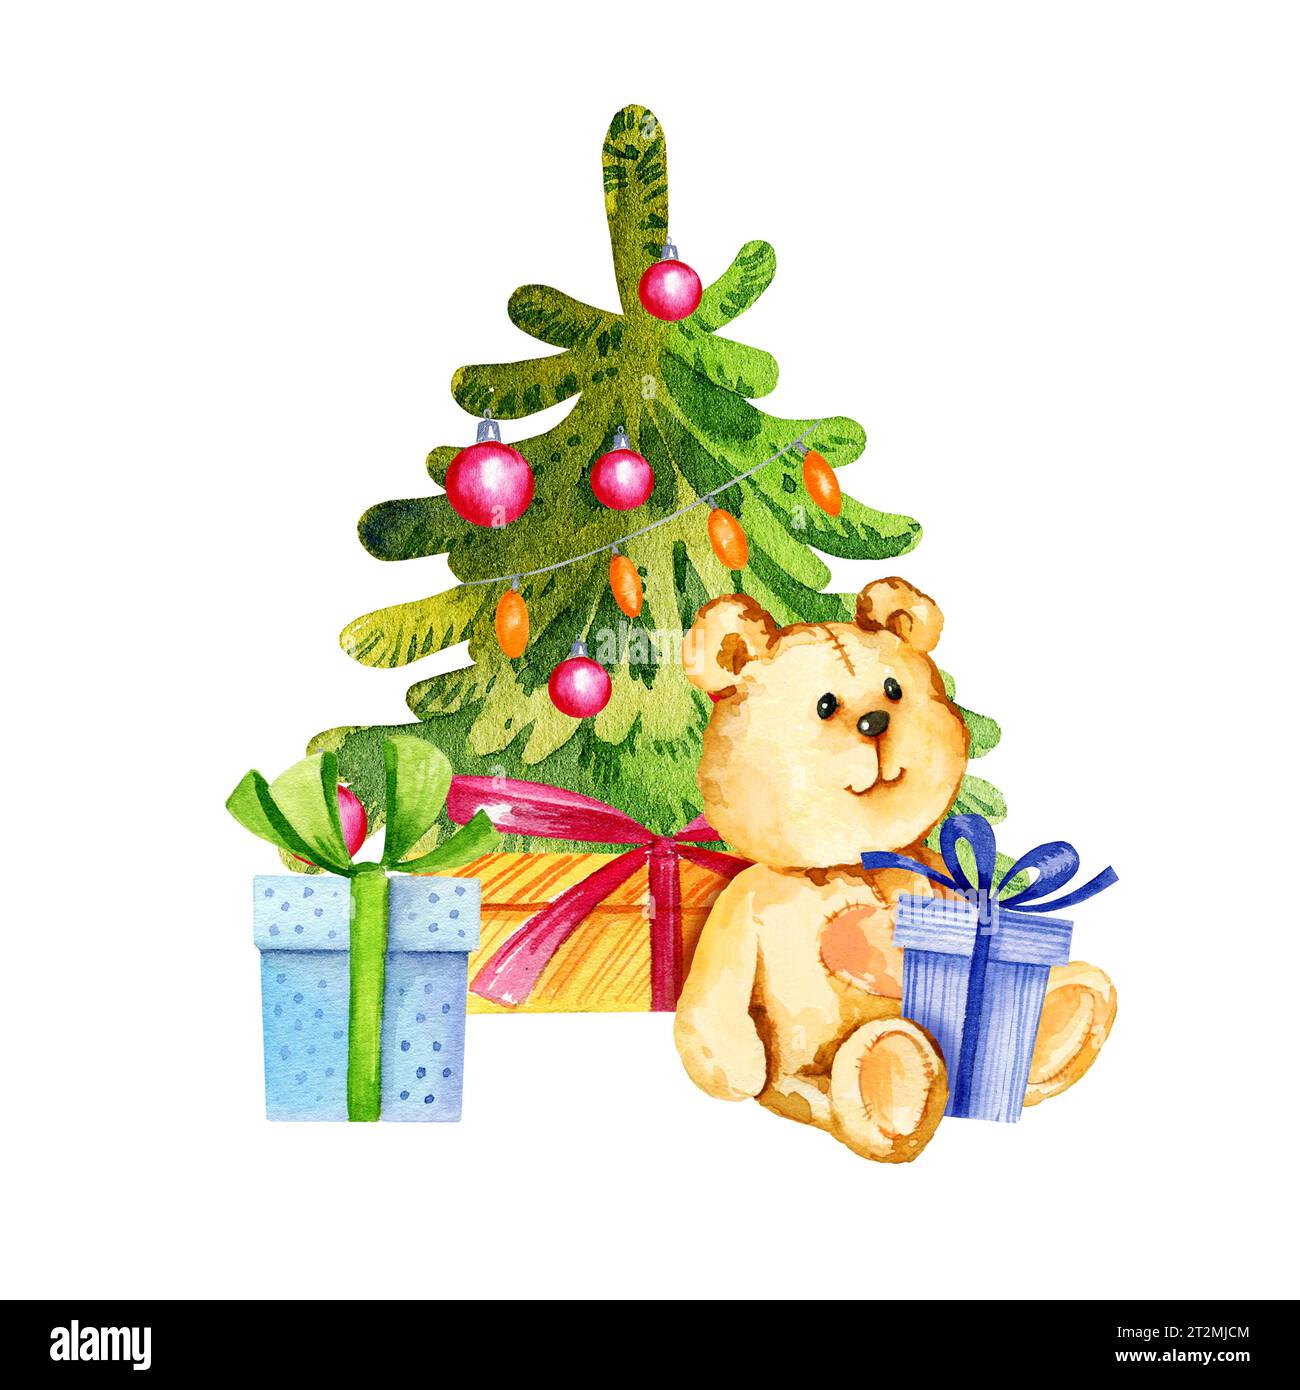 Composition d'aquarelle de thème de Noël avec un arbre de Noël avec des boules rouges, ours en peluche de dessin animé mignon et cadeaux, illustration d'événement d'hiver, main dra Banque D'Images